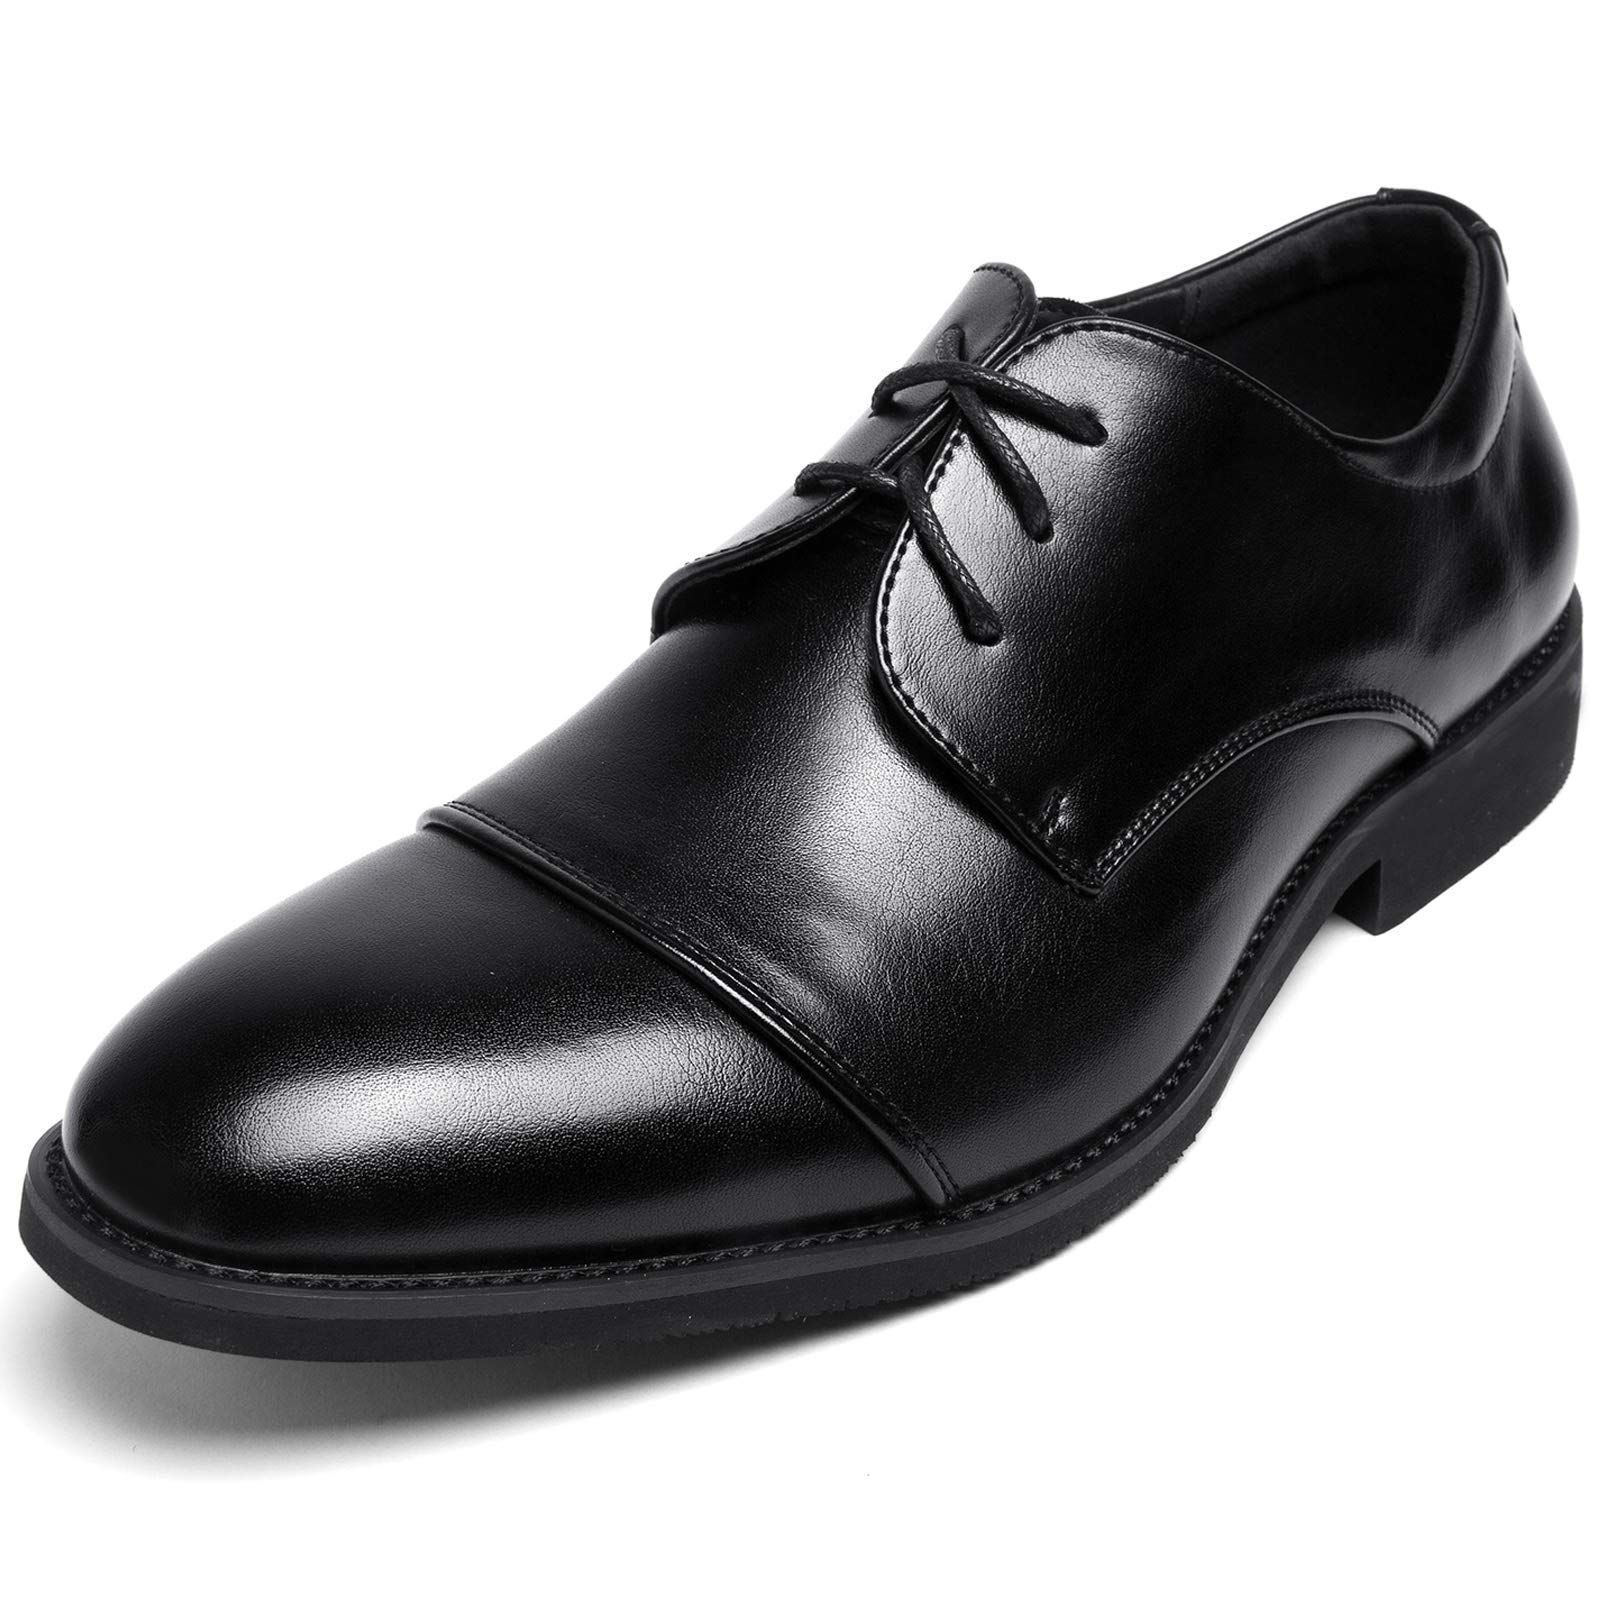 【直売一掃】メンズ ビジネス シューズ 本革 ブラック サイズ 25.0cm 革靴 靴 カジュアル 屈曲性 通勤 軽量 新品 ショートブーツ 25.0cm